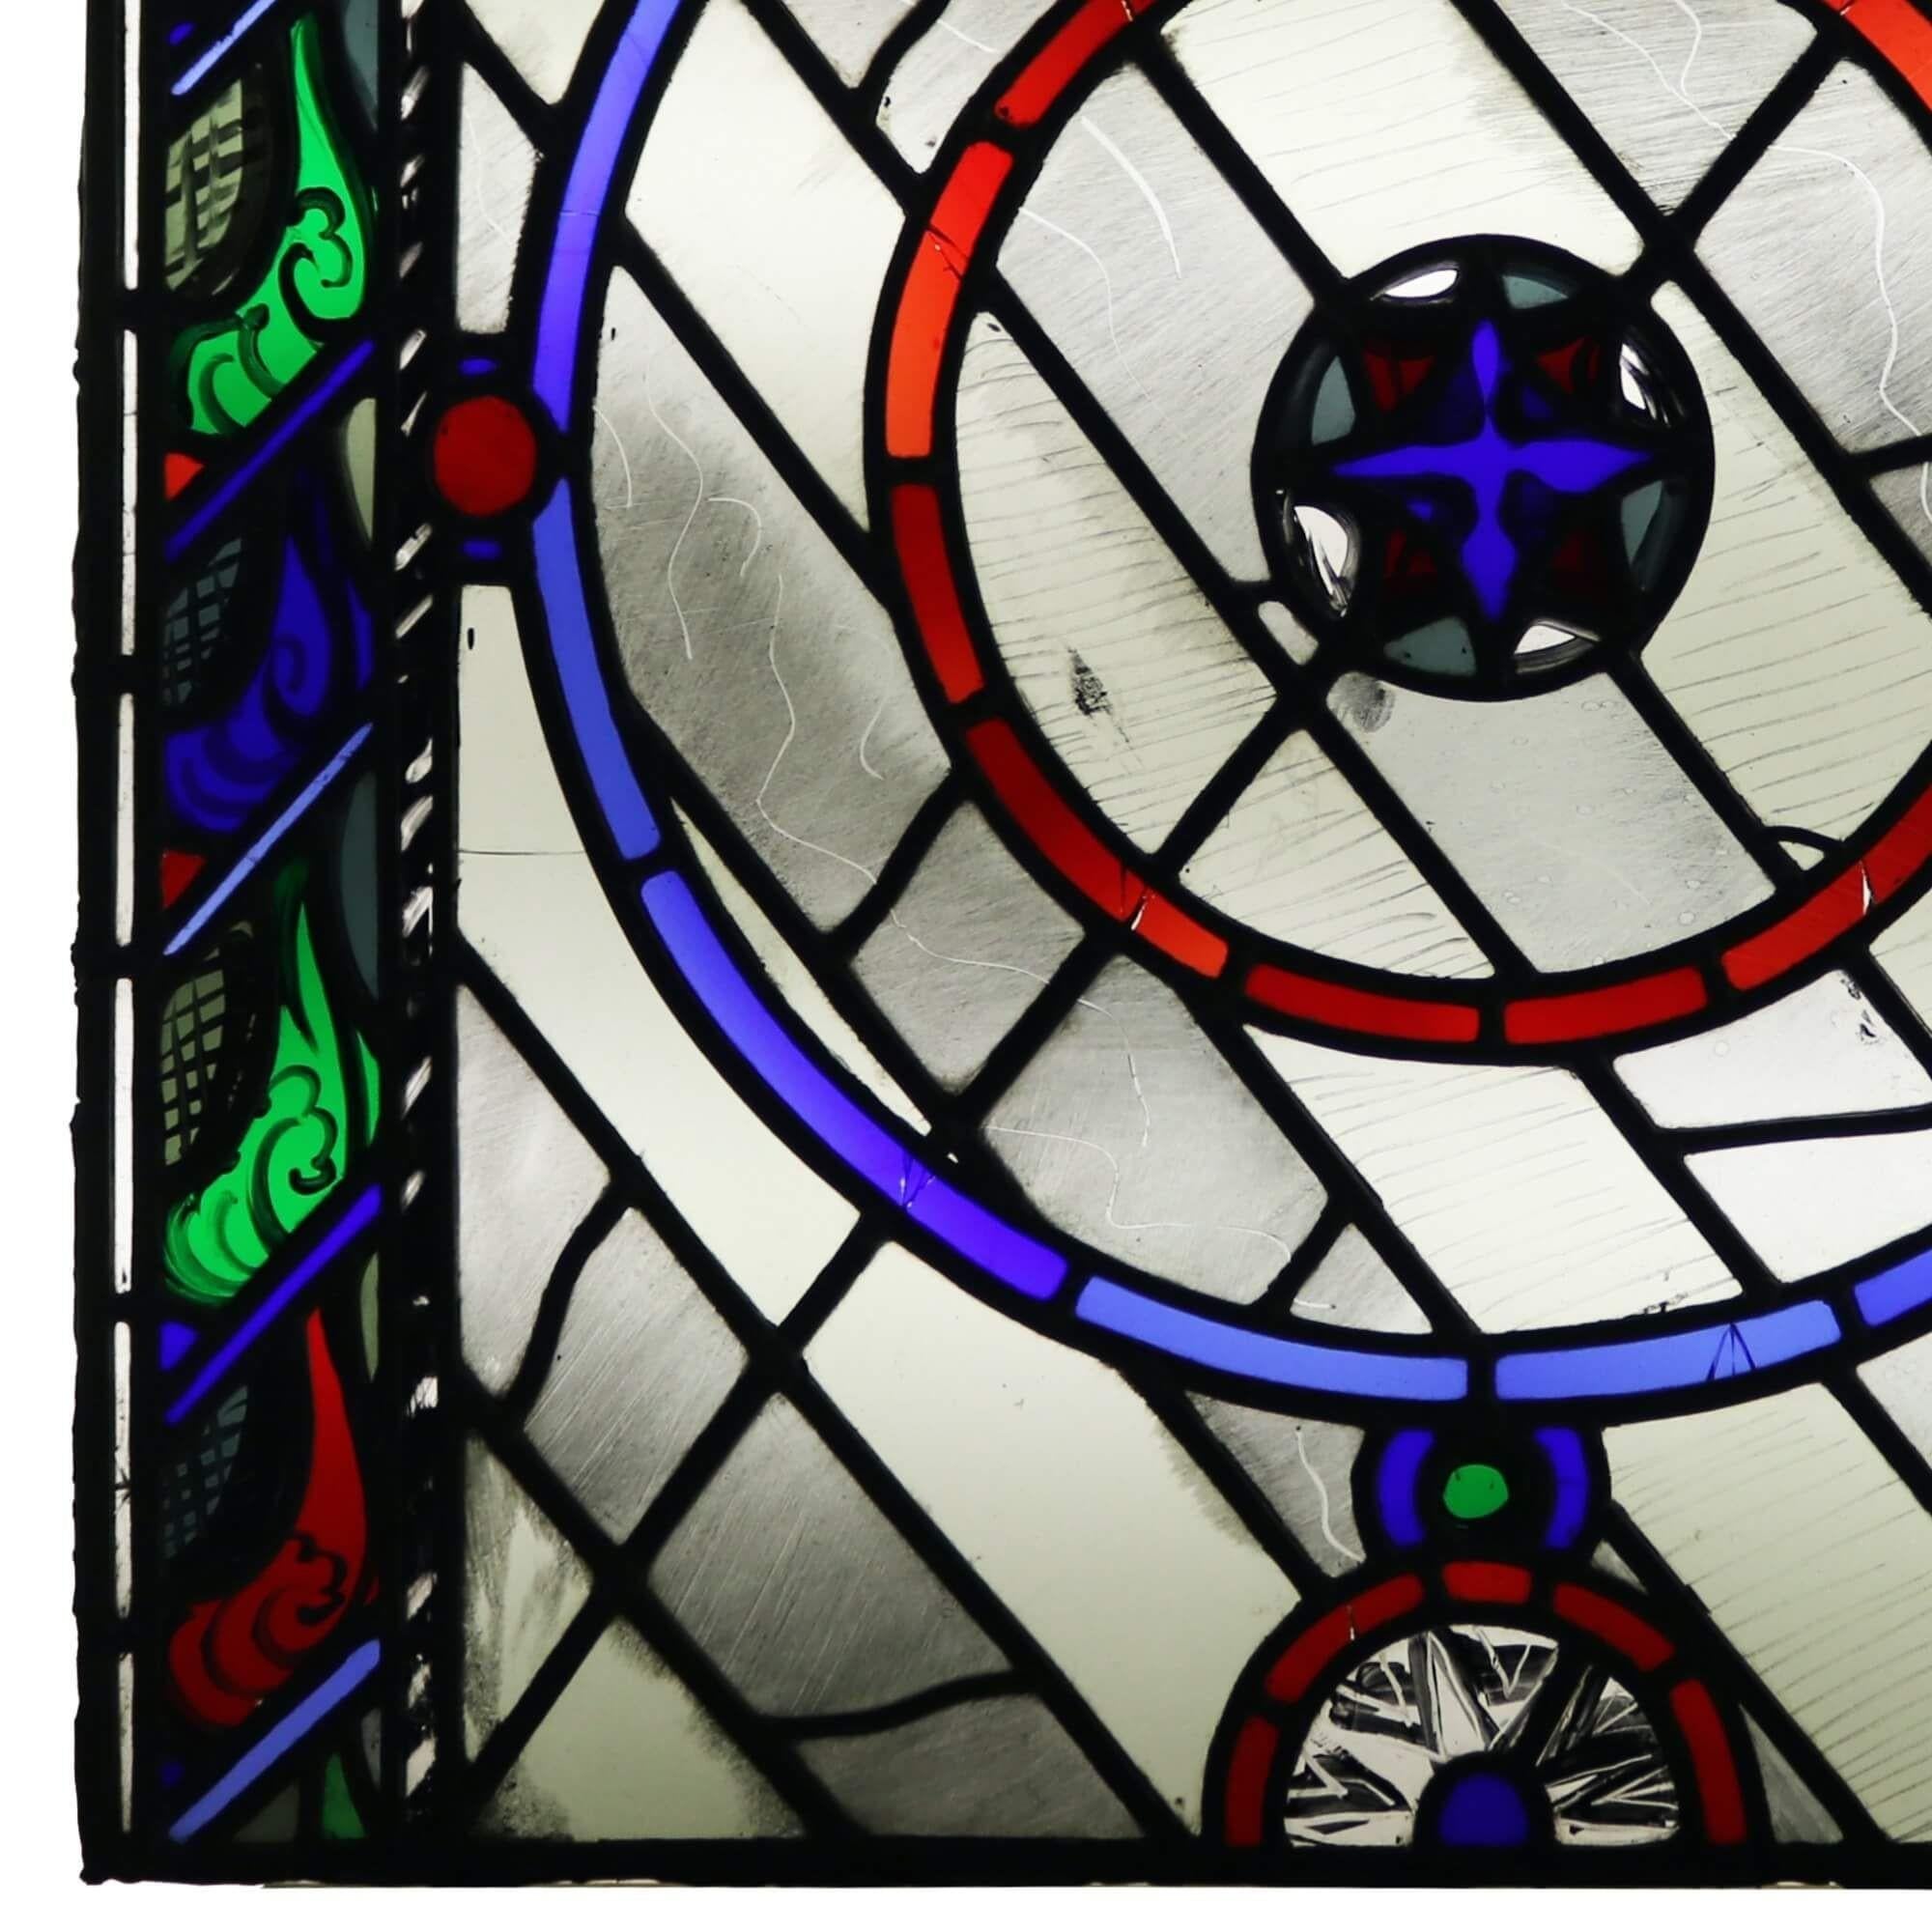 Ein zeitgenössisches Bleiglasfenster aus dem Studio von Patrick Reyntiens (1925-2021). Diese dem Künstler zugeschriebene Glasmalerei zeigt ein lebhaftes Muster mit Kreisen in Rot und Blau zwischen farbigen vertikalen Tafeln auf beiden Seiten. Es